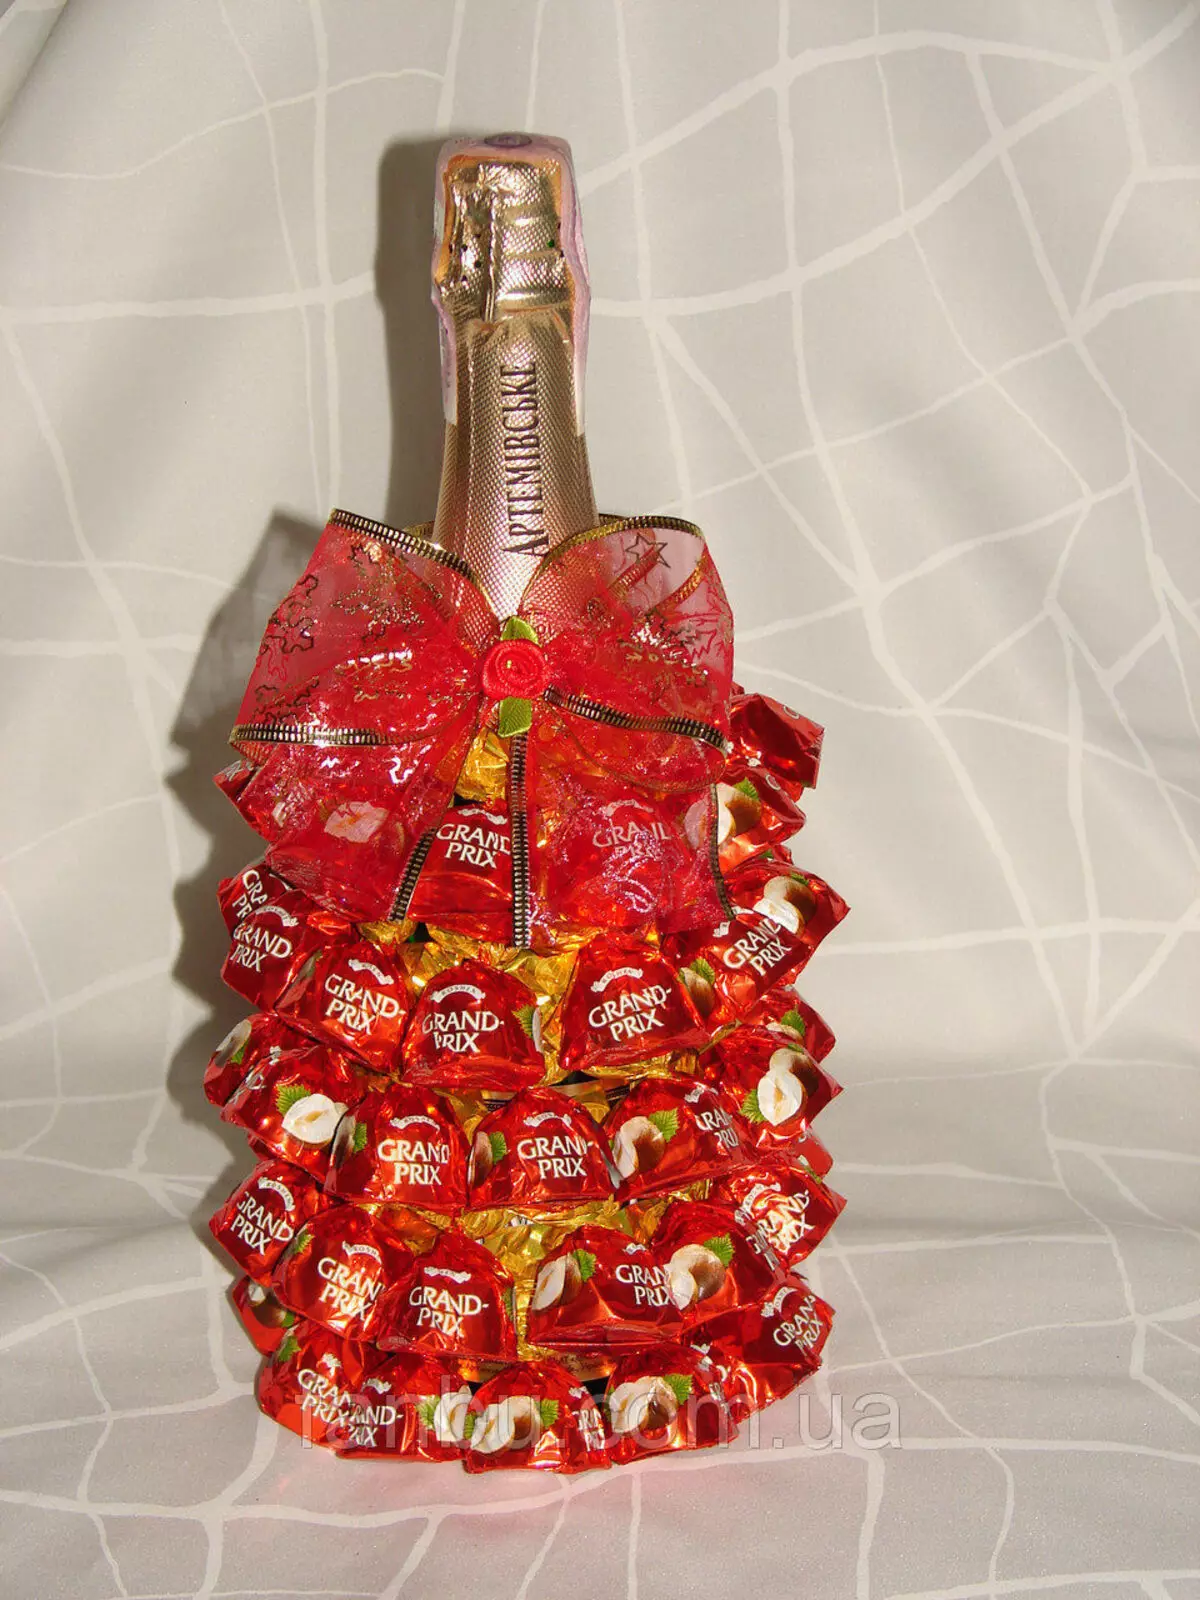 زينت الشمبانيا مع الحلوى للعام الجديد: الديكور زجاجة بأيديهم في شكل الأناناس، تصميم الذكور والديكور للنساء 7613_10